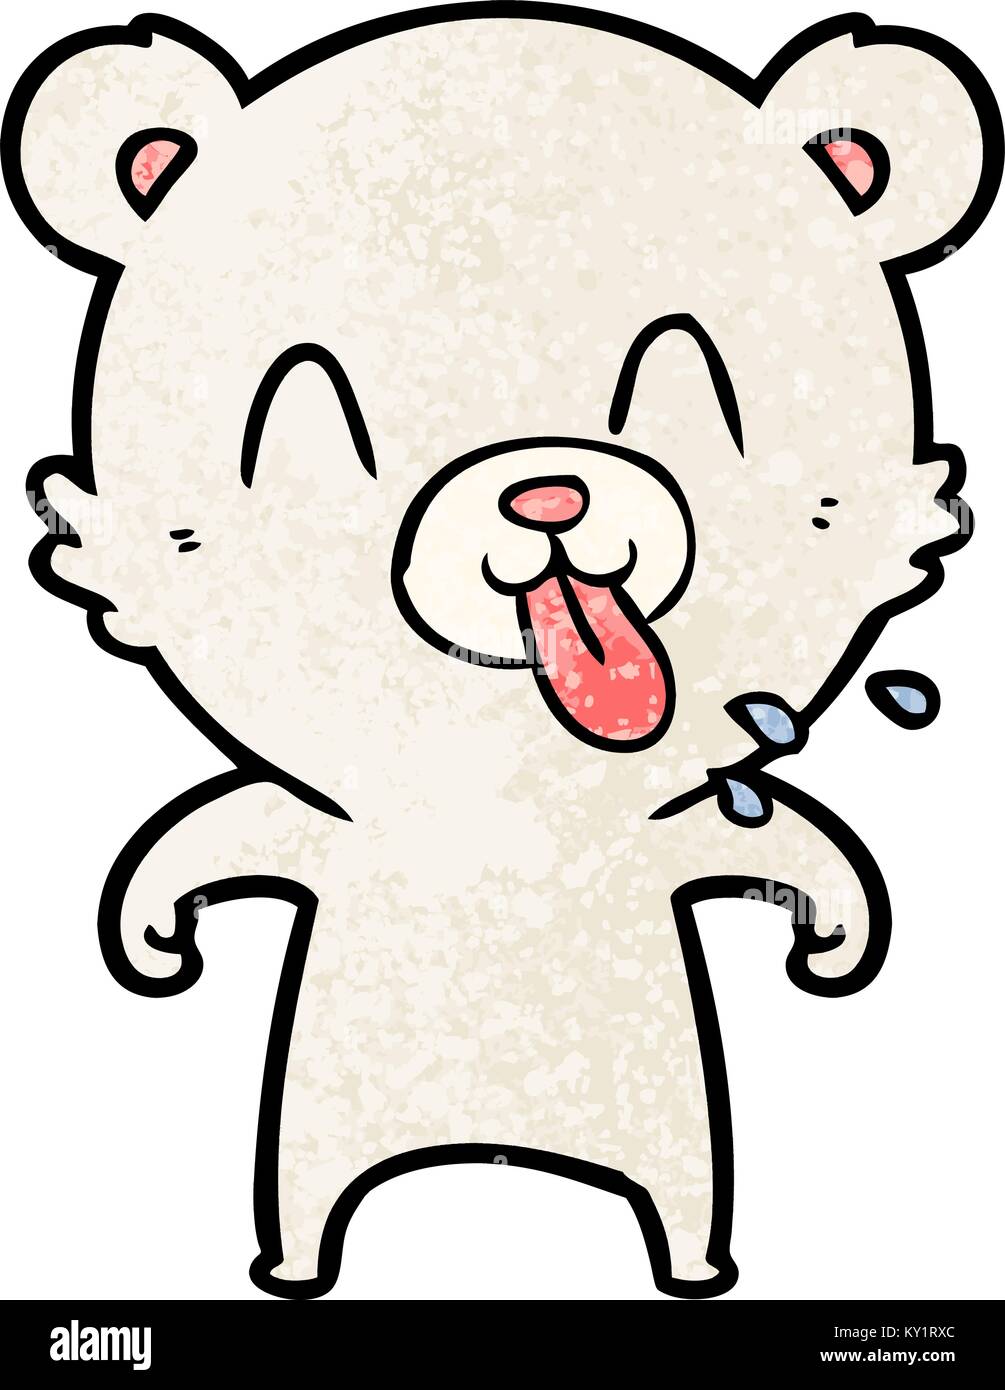 rude cartoon polar bear sticking out tongue Stock Vector Image & Art - Alamy